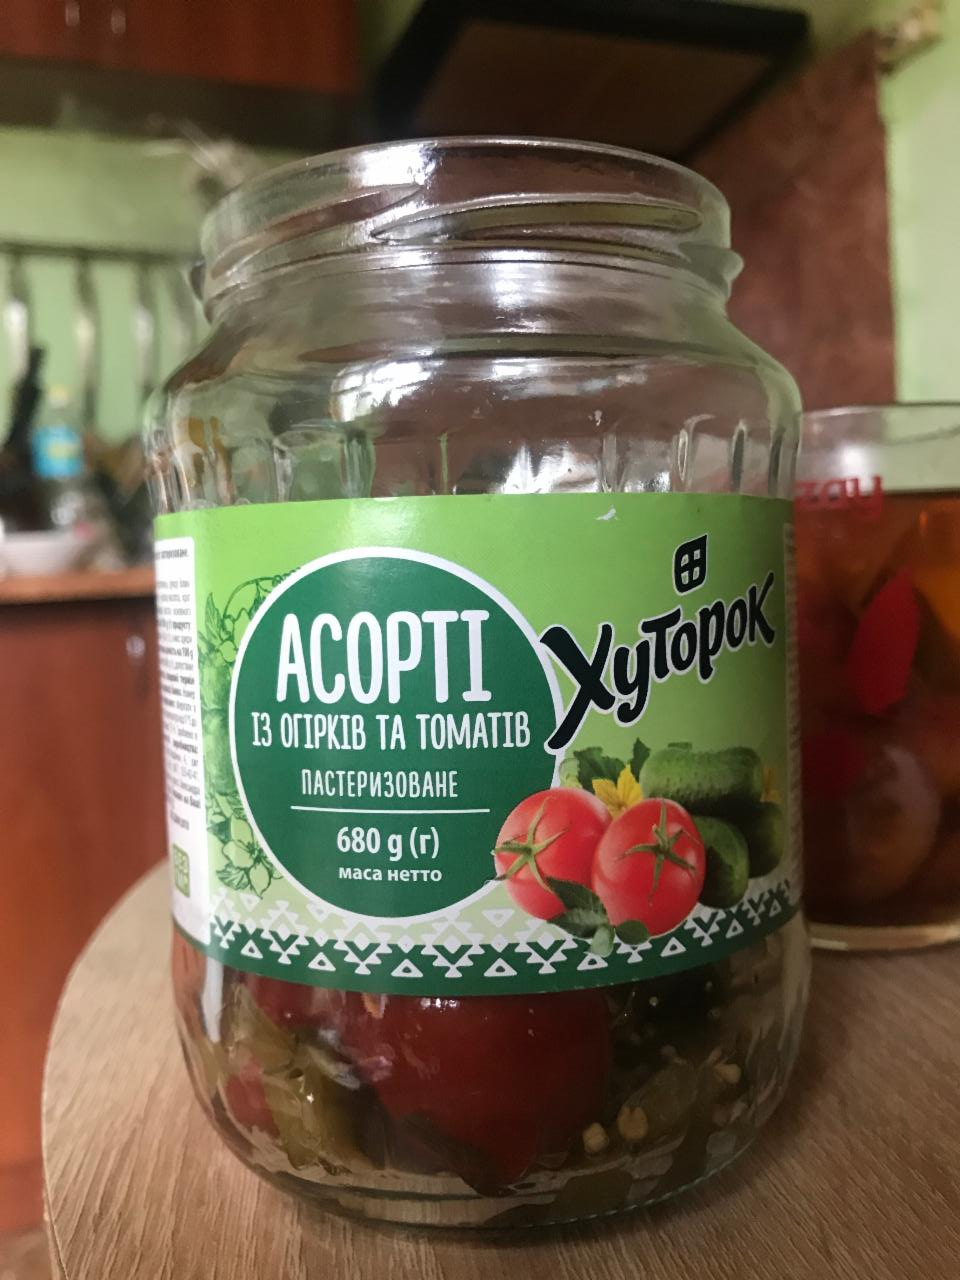 Фото - Асорті із огірків та томатів Хуторок